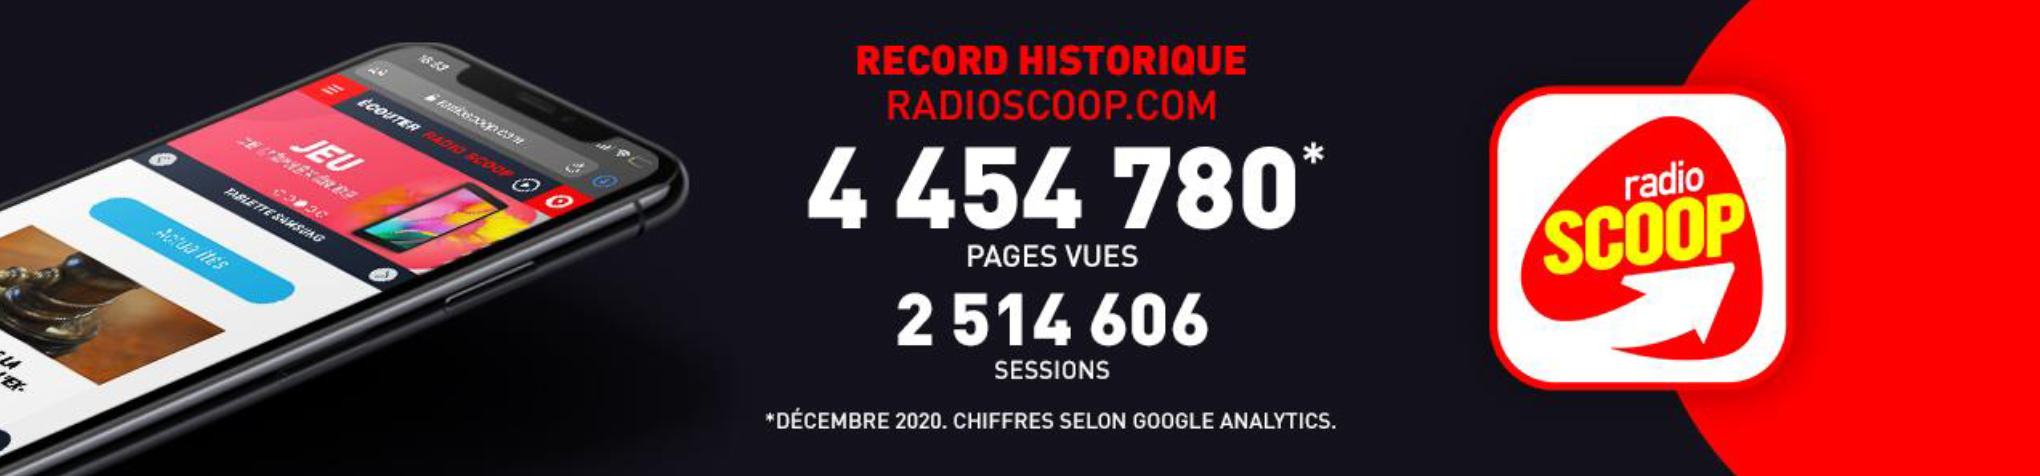 Un nouveau record historique pour RadioScoop.com